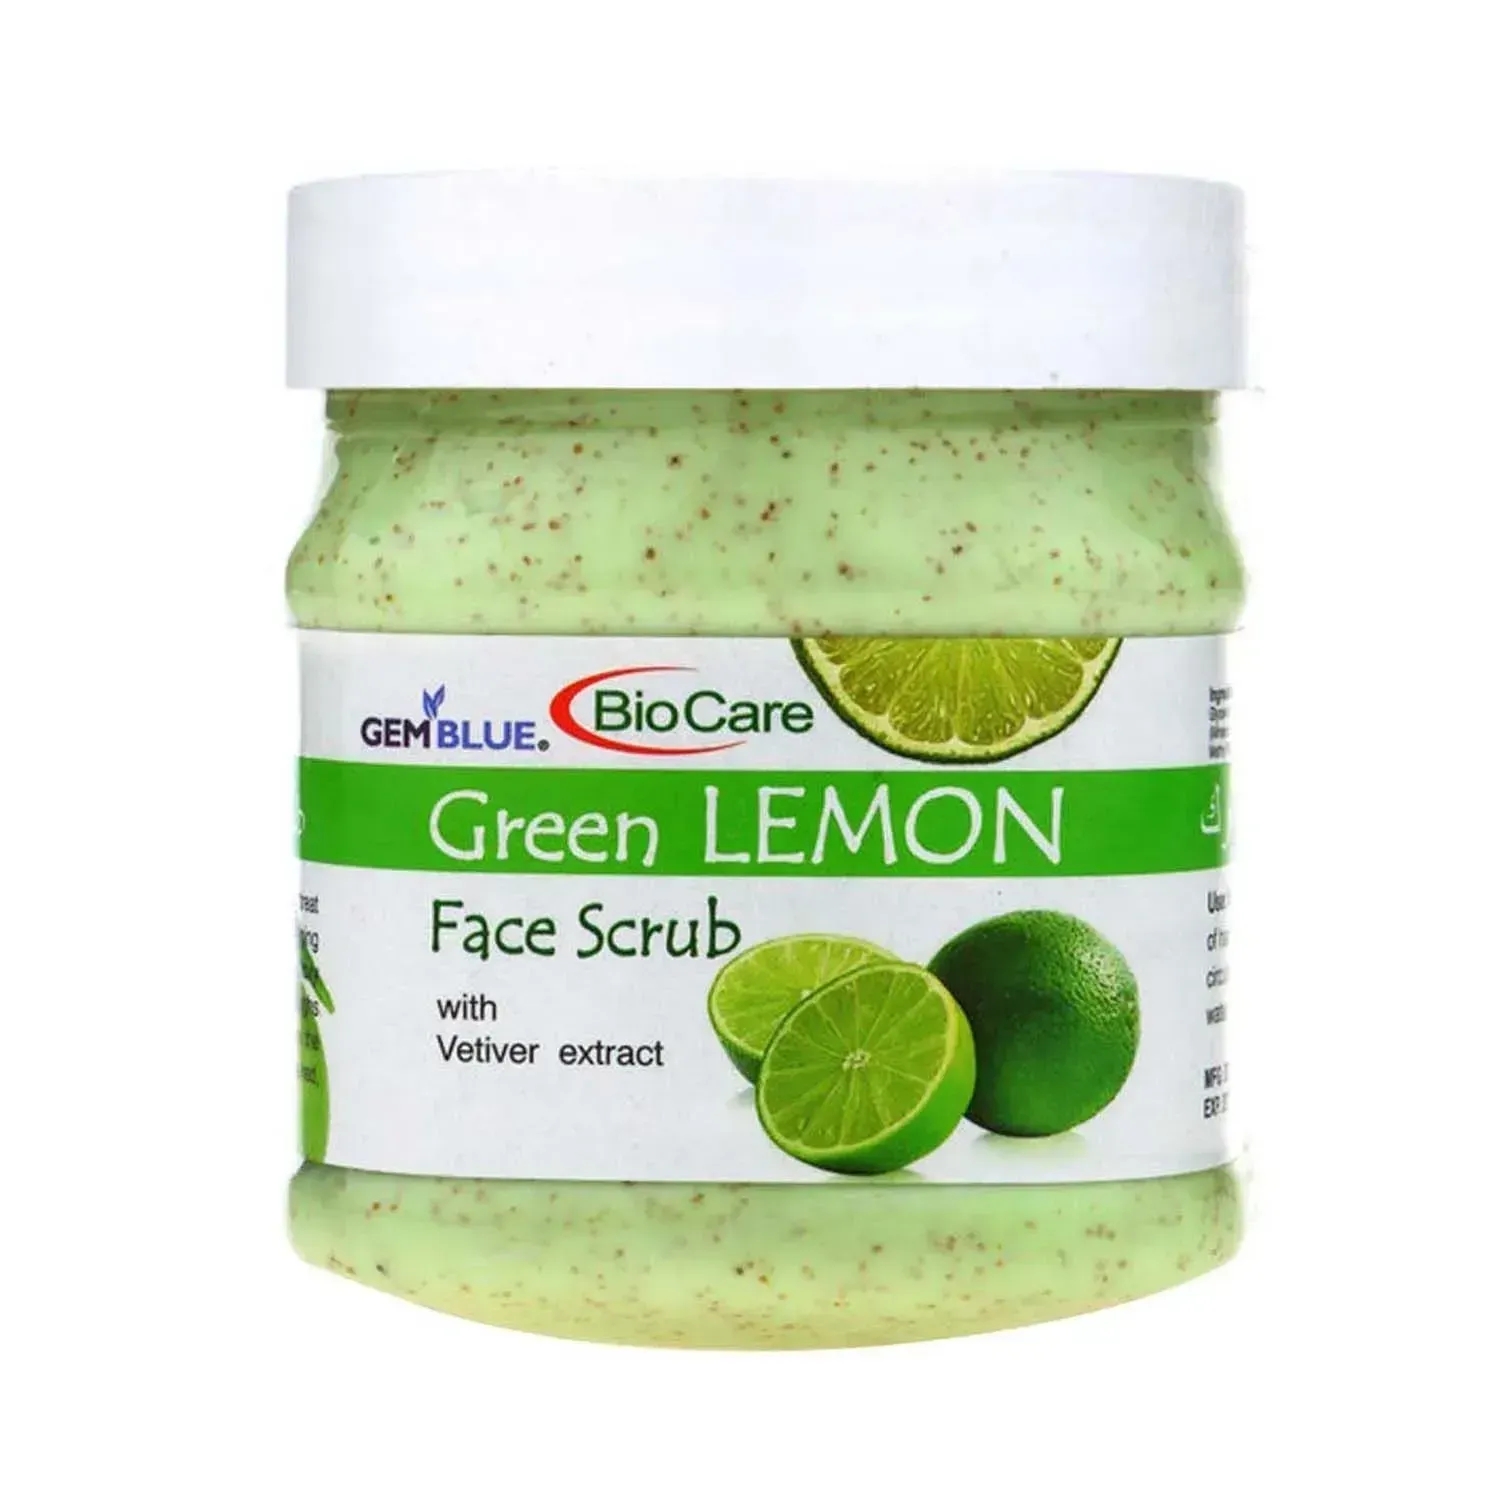 Gemblue Biocare | Gemblue Biocare Green Lemon Face & Body Scrub - (500ml)